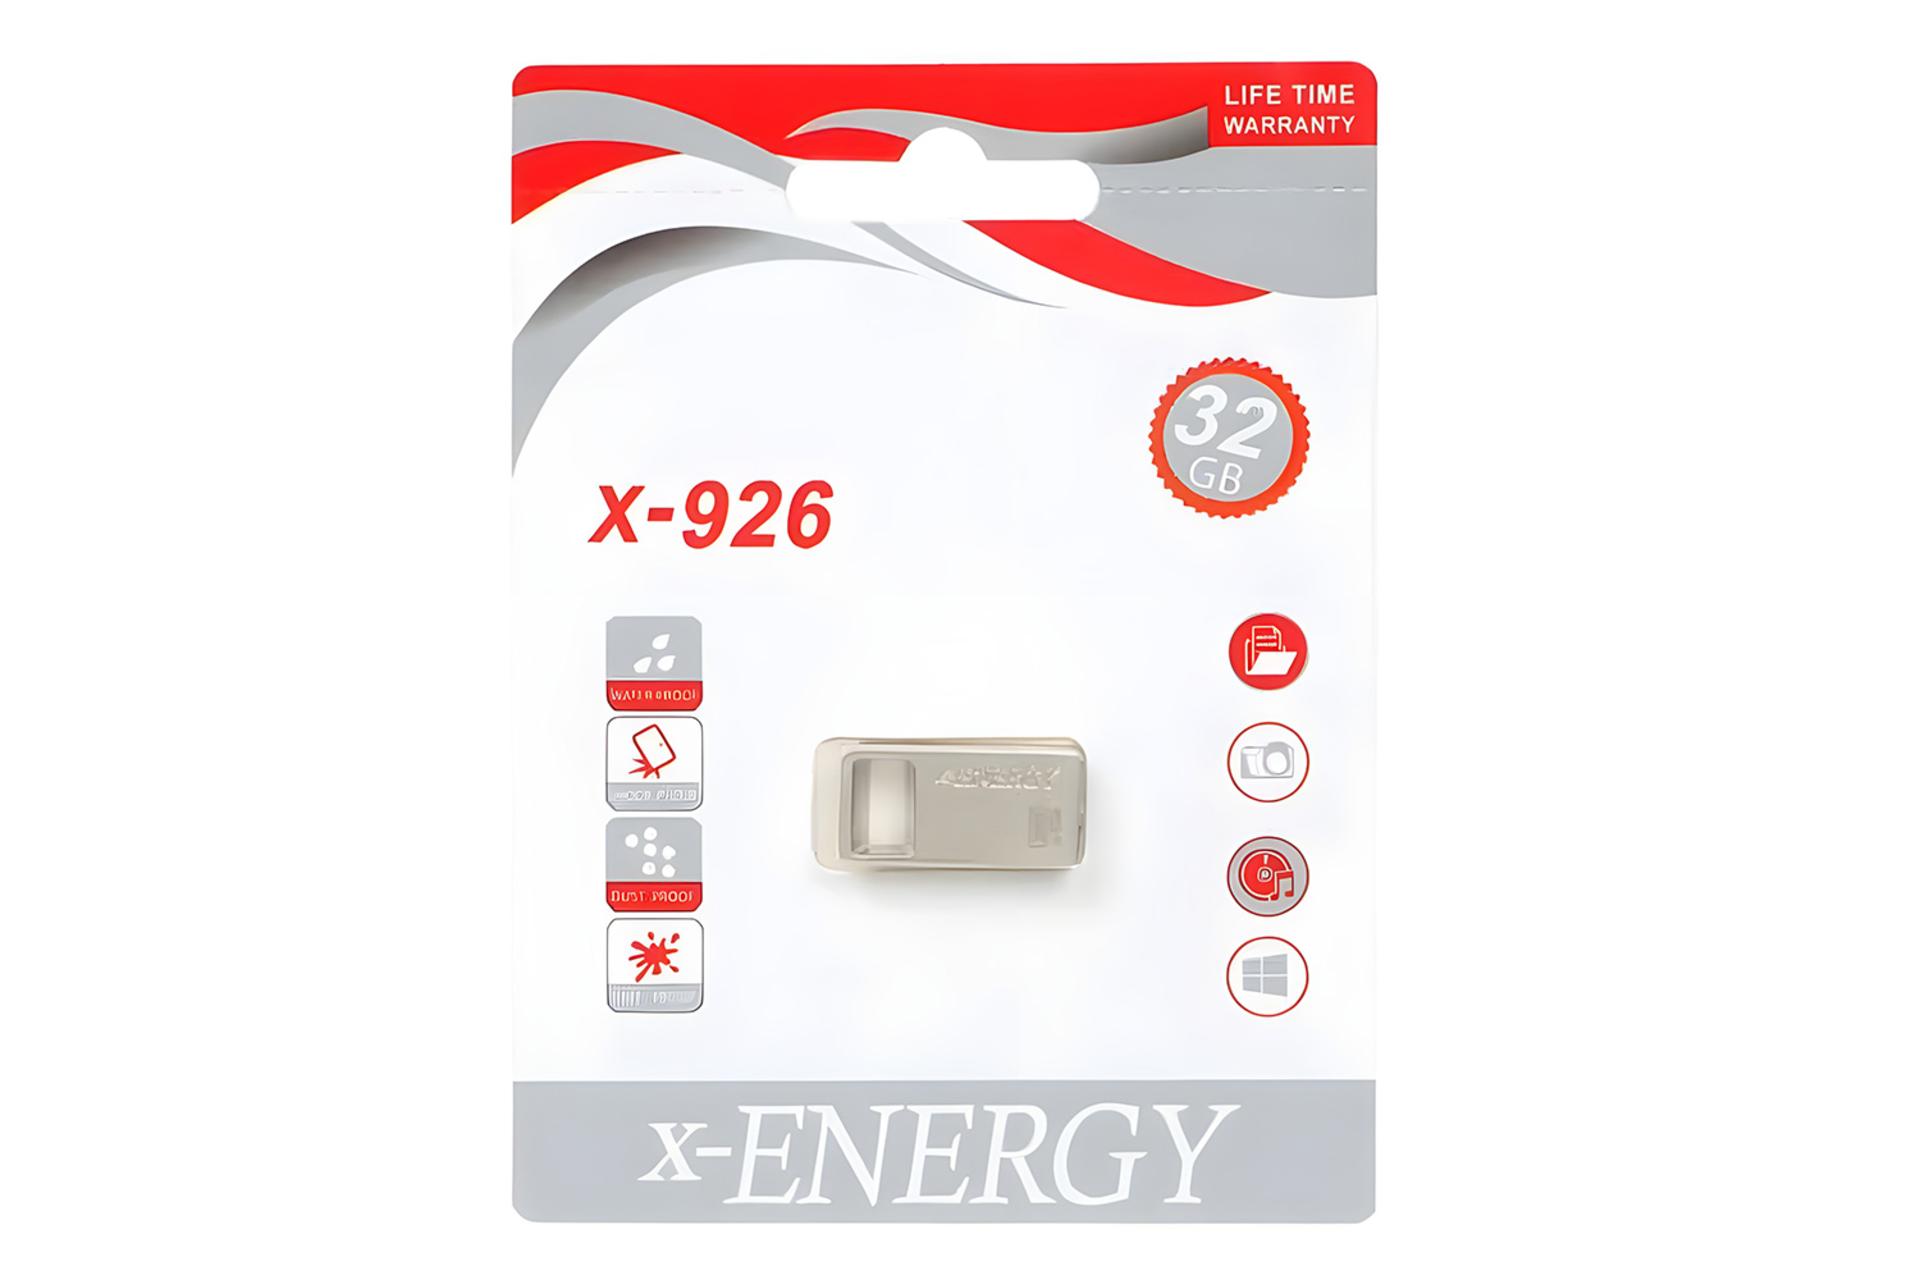 جعبه فلش مموری ایکس انرژی x-Energy X-926 32GB USB 2.0